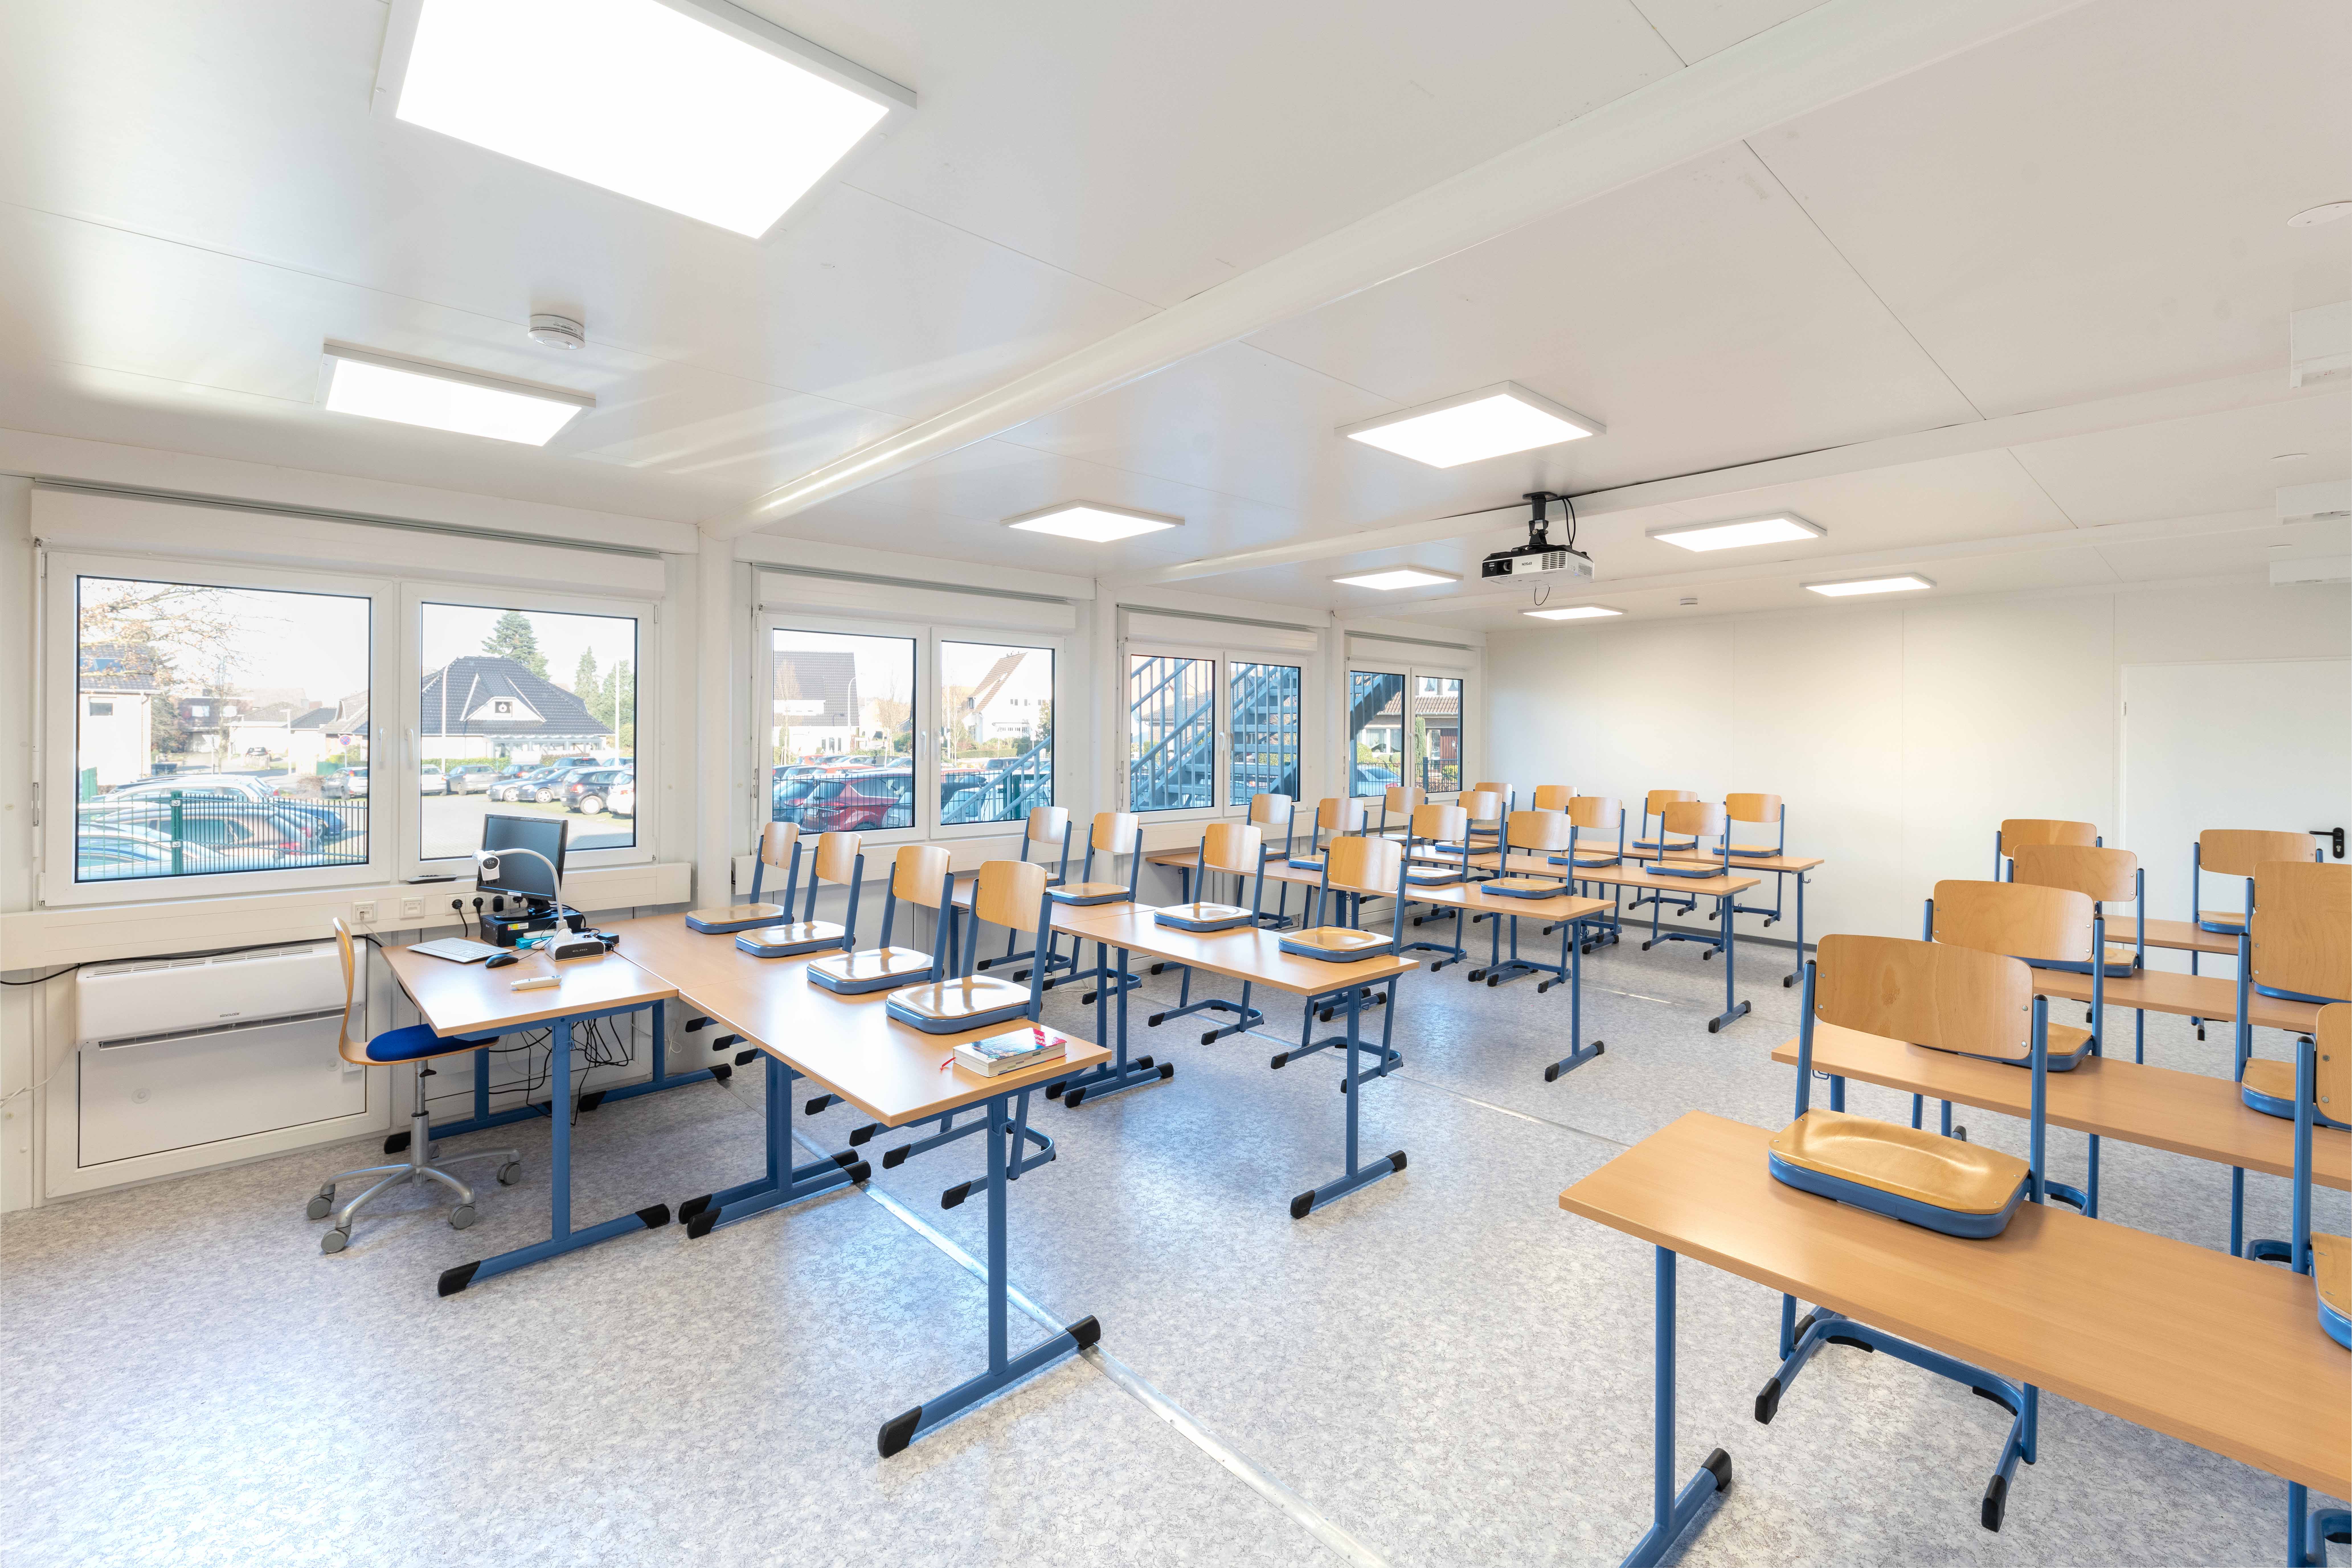 Les salles de classe peuvent accueillir environ 30 élèves.